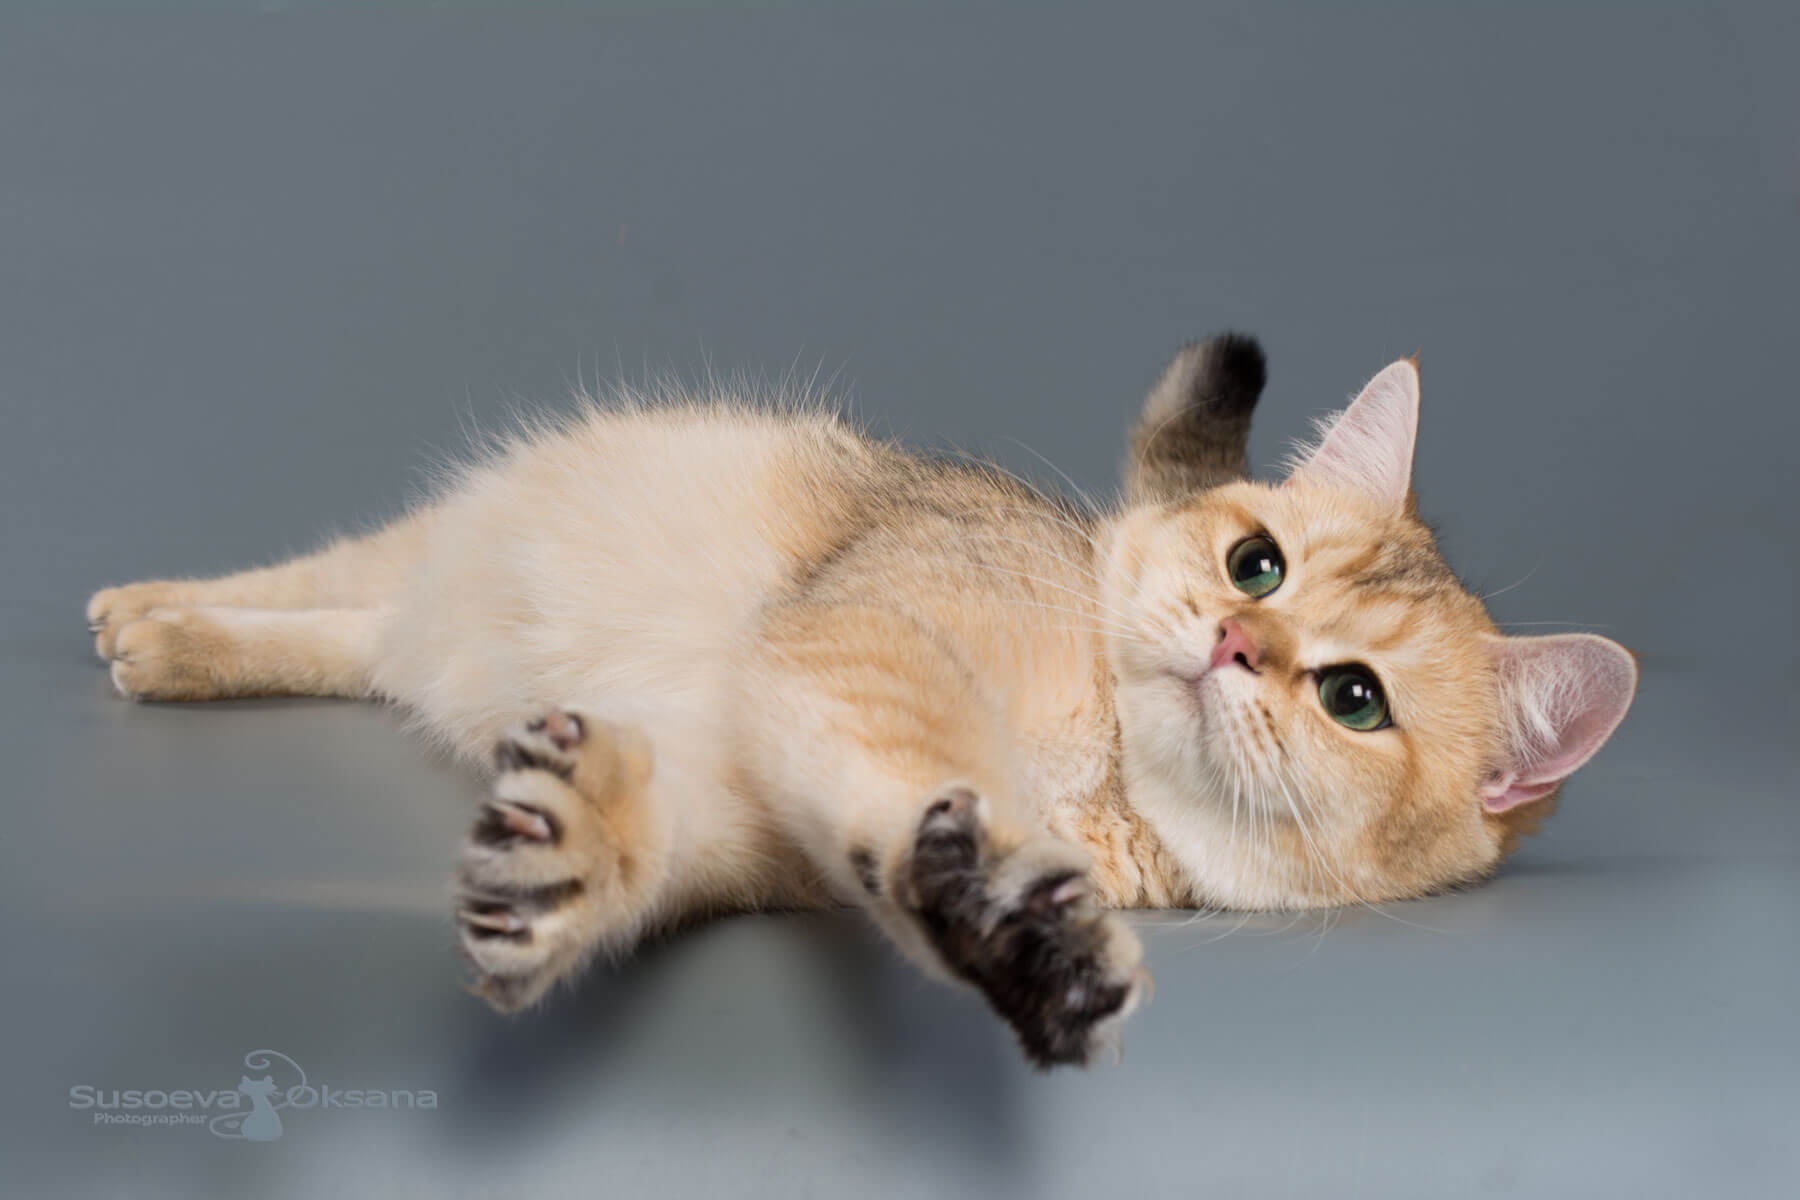 Фото золотой британской кошки по имени Хелси